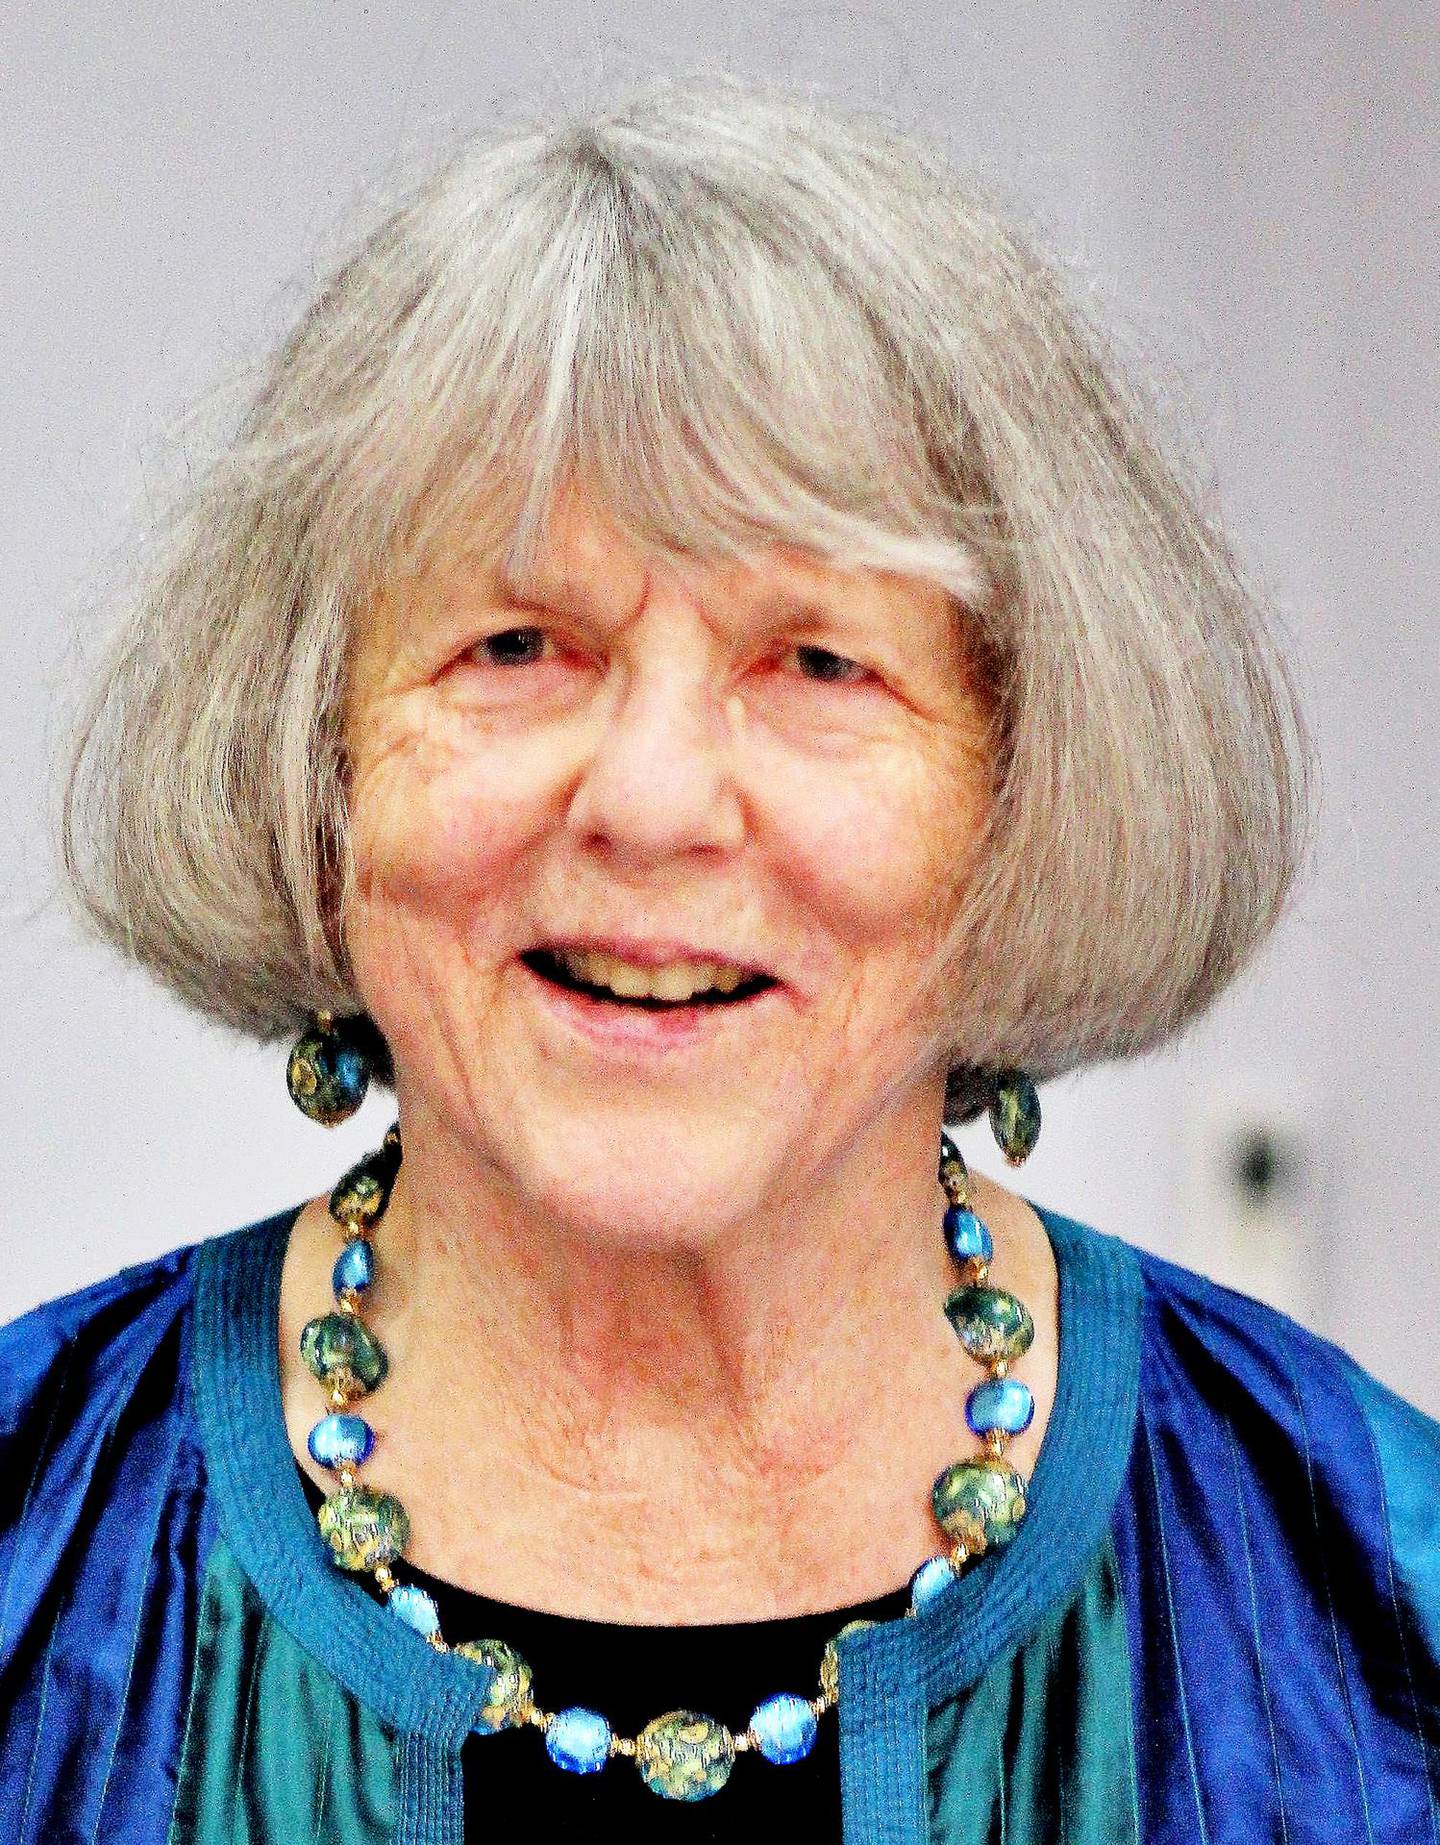 Astrid Grønneberg Chapman vokste opp på Sinsen i Oslo på 50-tallet, men flyttet fra byen som 20-åring. Hun tok en doktorgrad i biokjemi, og jobbet som forsker, før hun ble pensjonert. Nå bor hun i London med sin britiske ektemann. Foto: Hilde Unosen